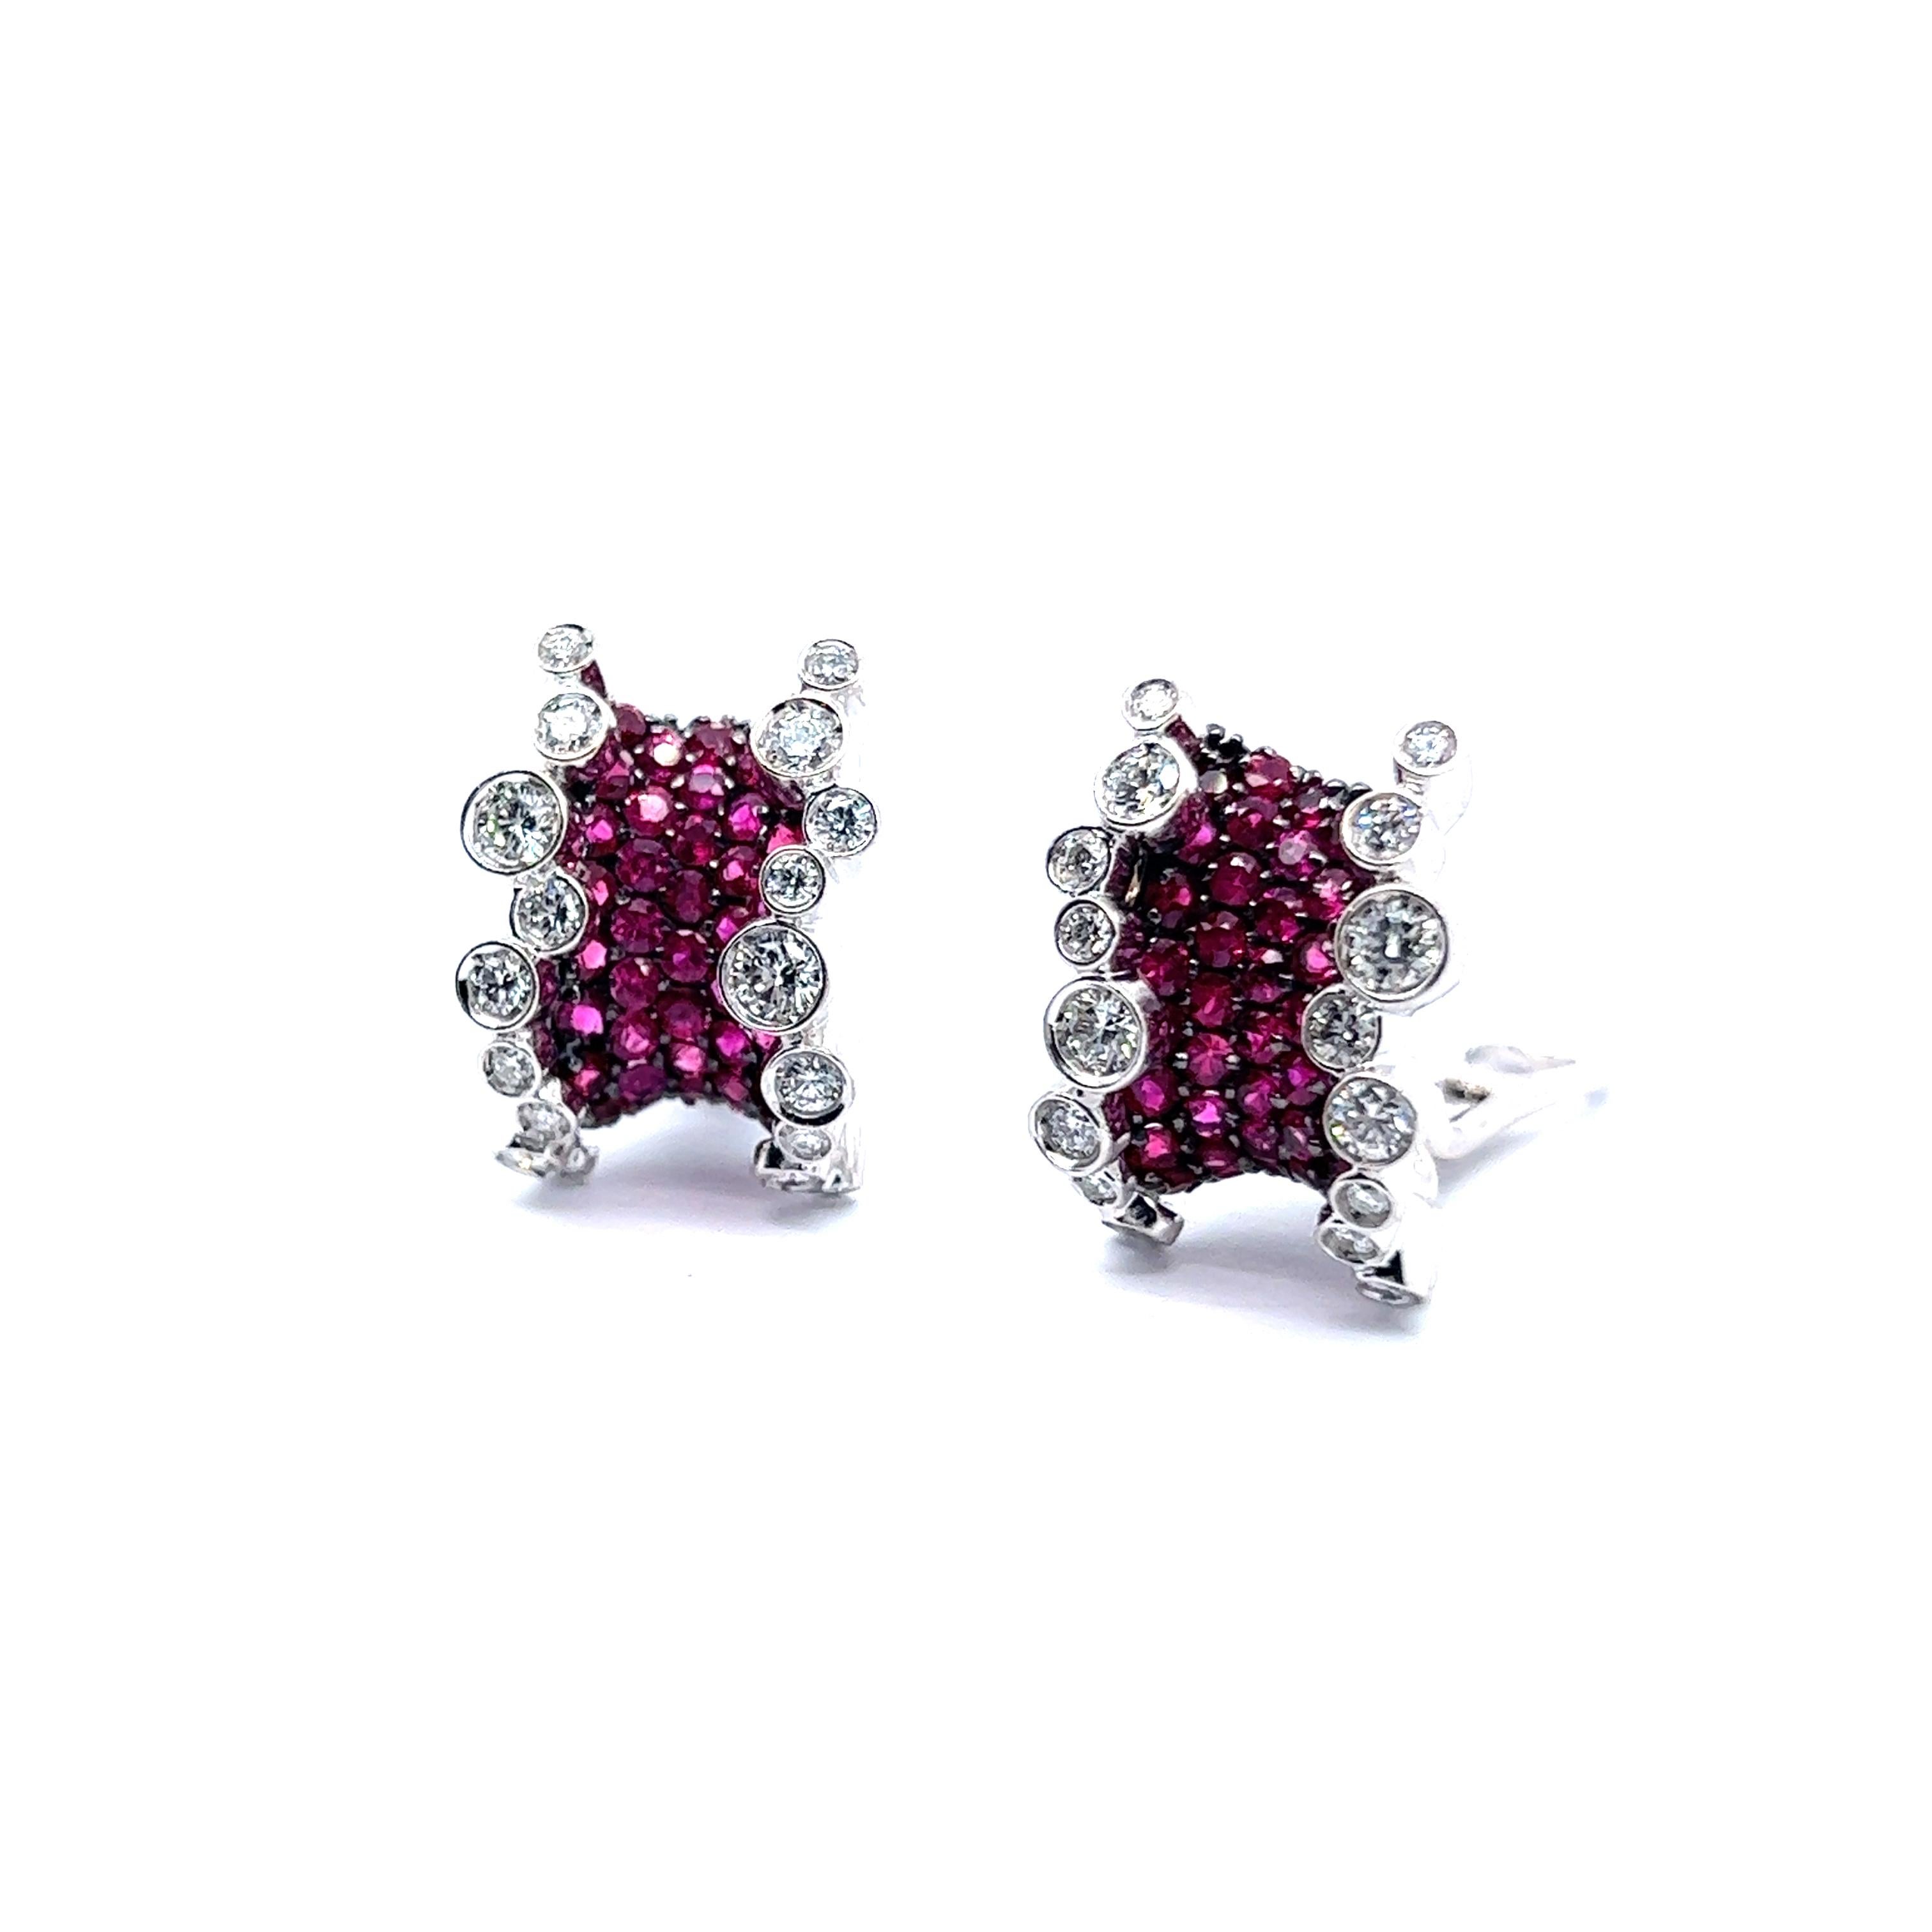 Une exquise paire de boucles d'oreilles avec rubis et diamants en or blanc 18 carats. Ces beautés sont un véritable témoignage du luxe et de l'art, ressemblant à deux fruits exotiques ou à des bonbons capturés sous la forme de bijoux. 

Chaque